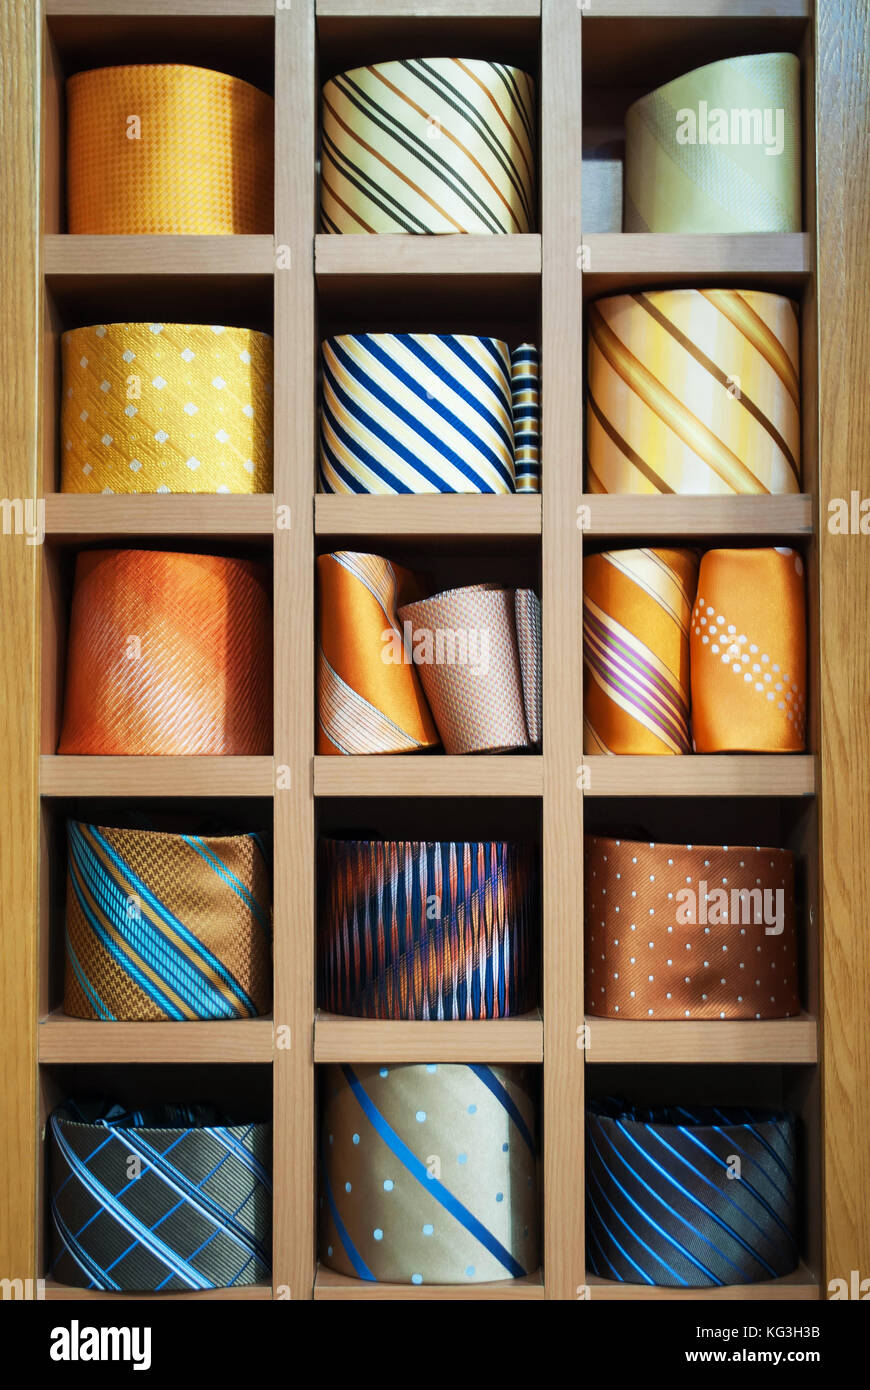 Cravatte in vetrina al negozio. collezione di cravatte a spirale nel display Foto Stock